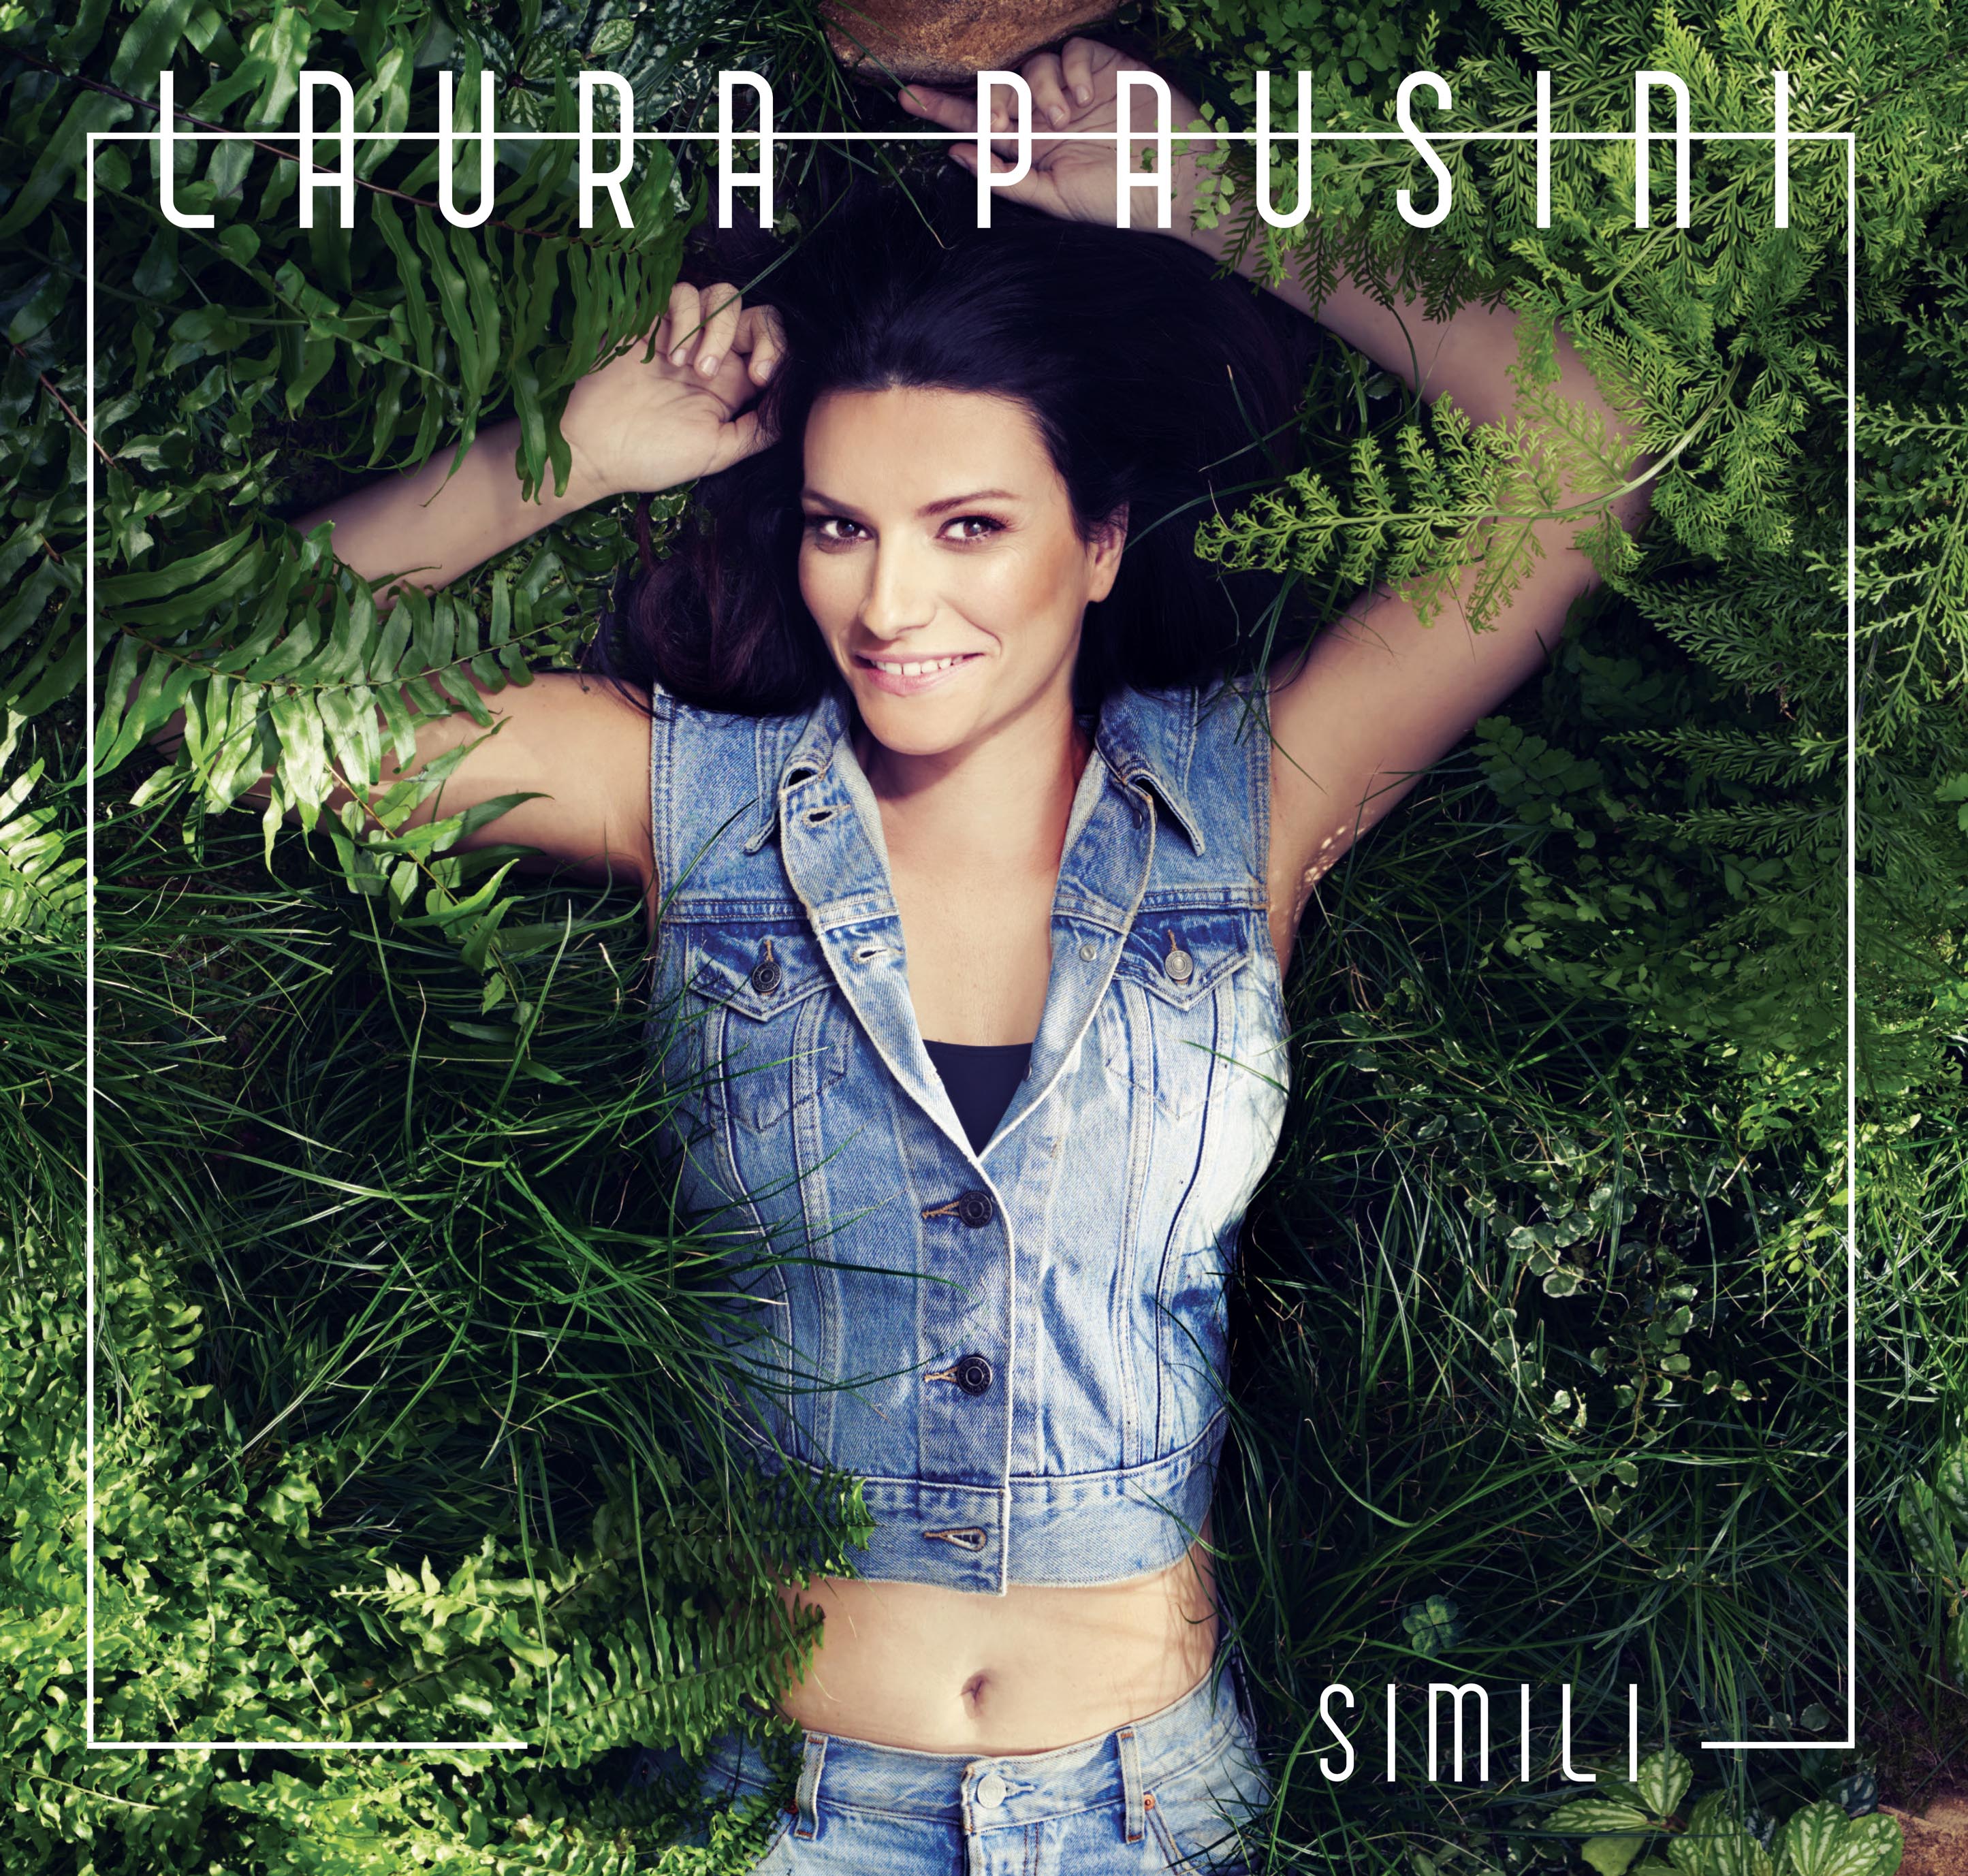  Simili, successo online per il nuovo videoclip di Laura Pausini – VIDEOCLIP